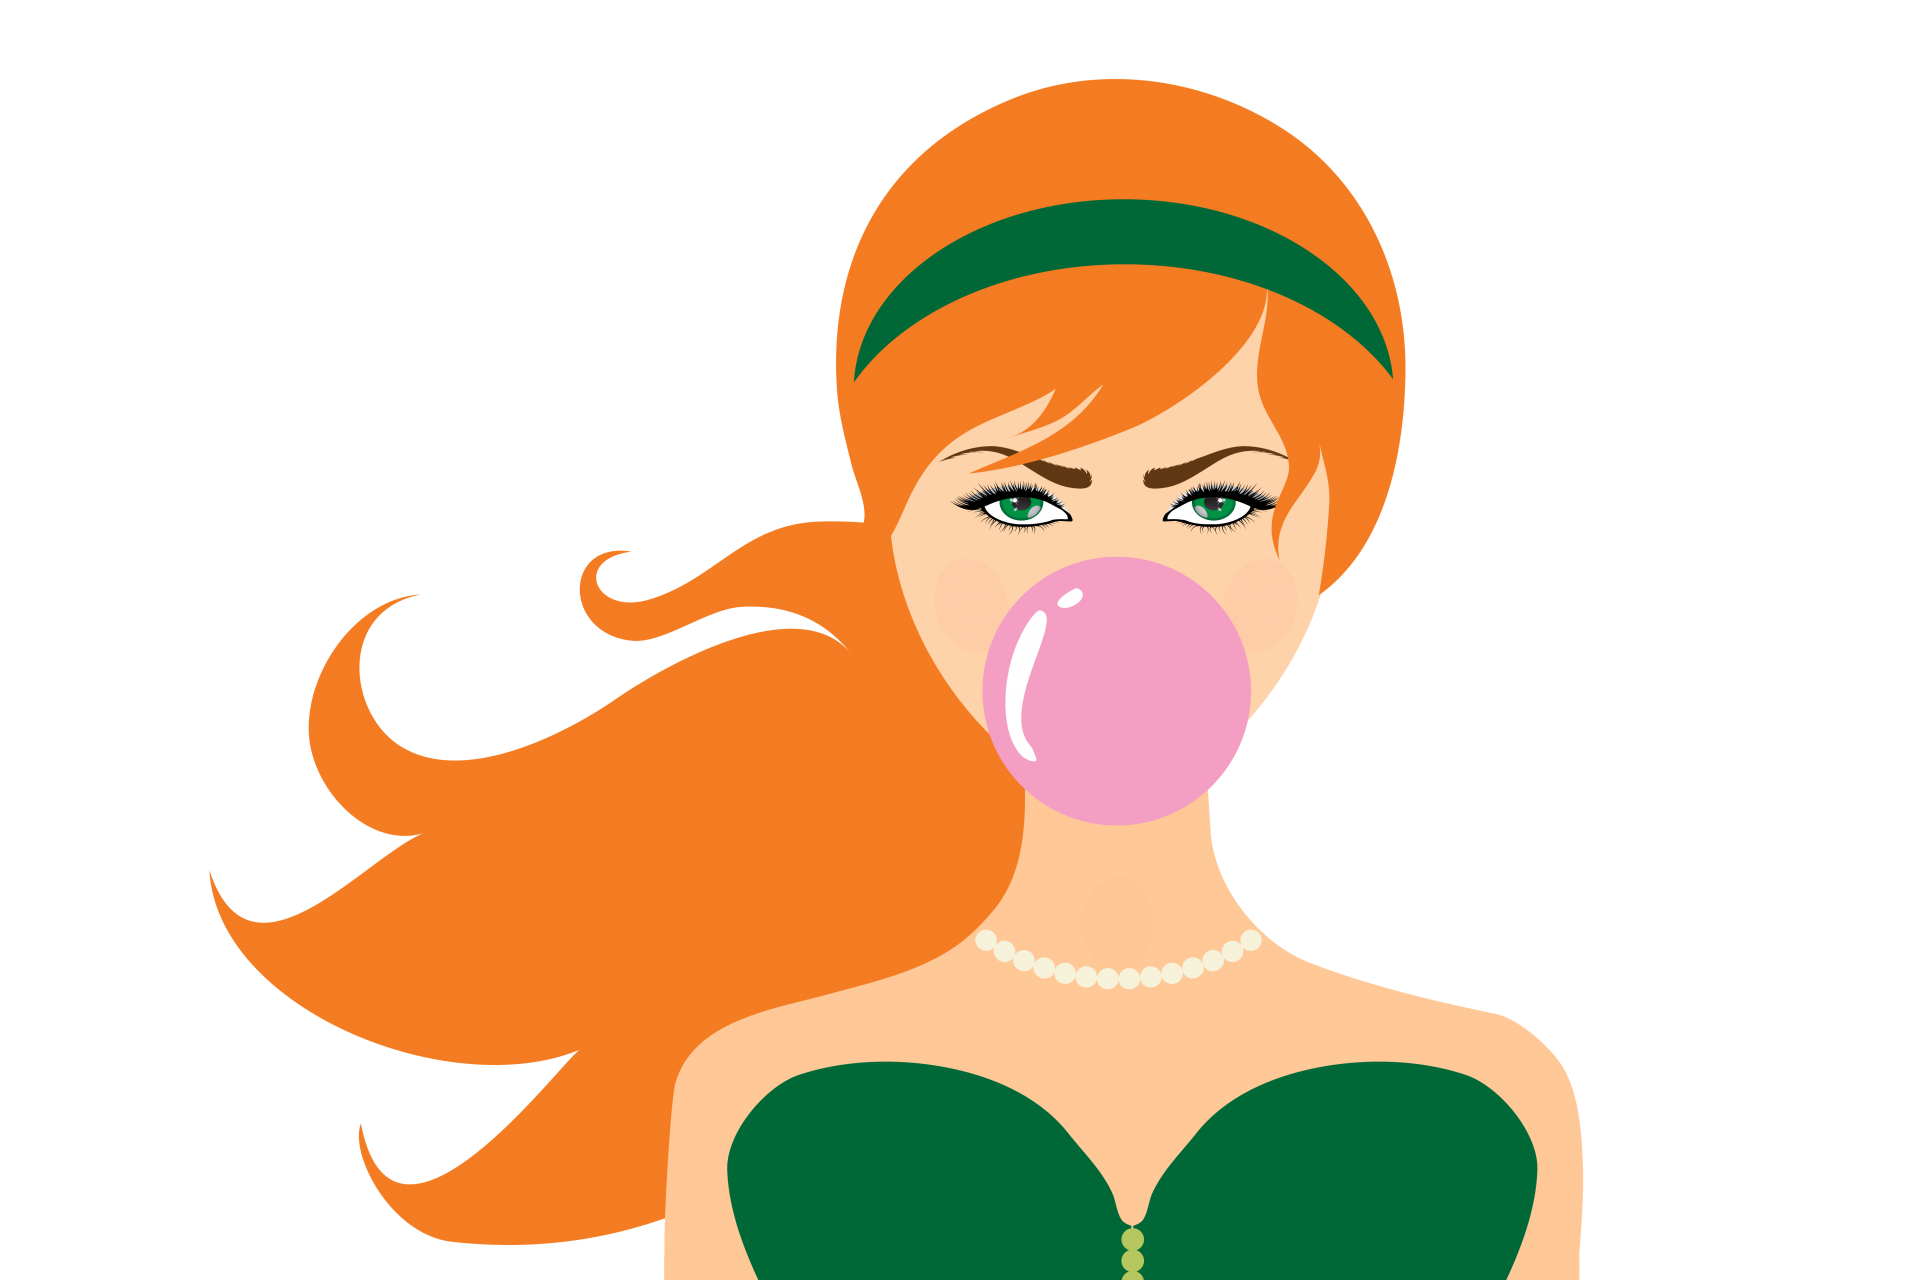 Woman Blowing Bubble Gum